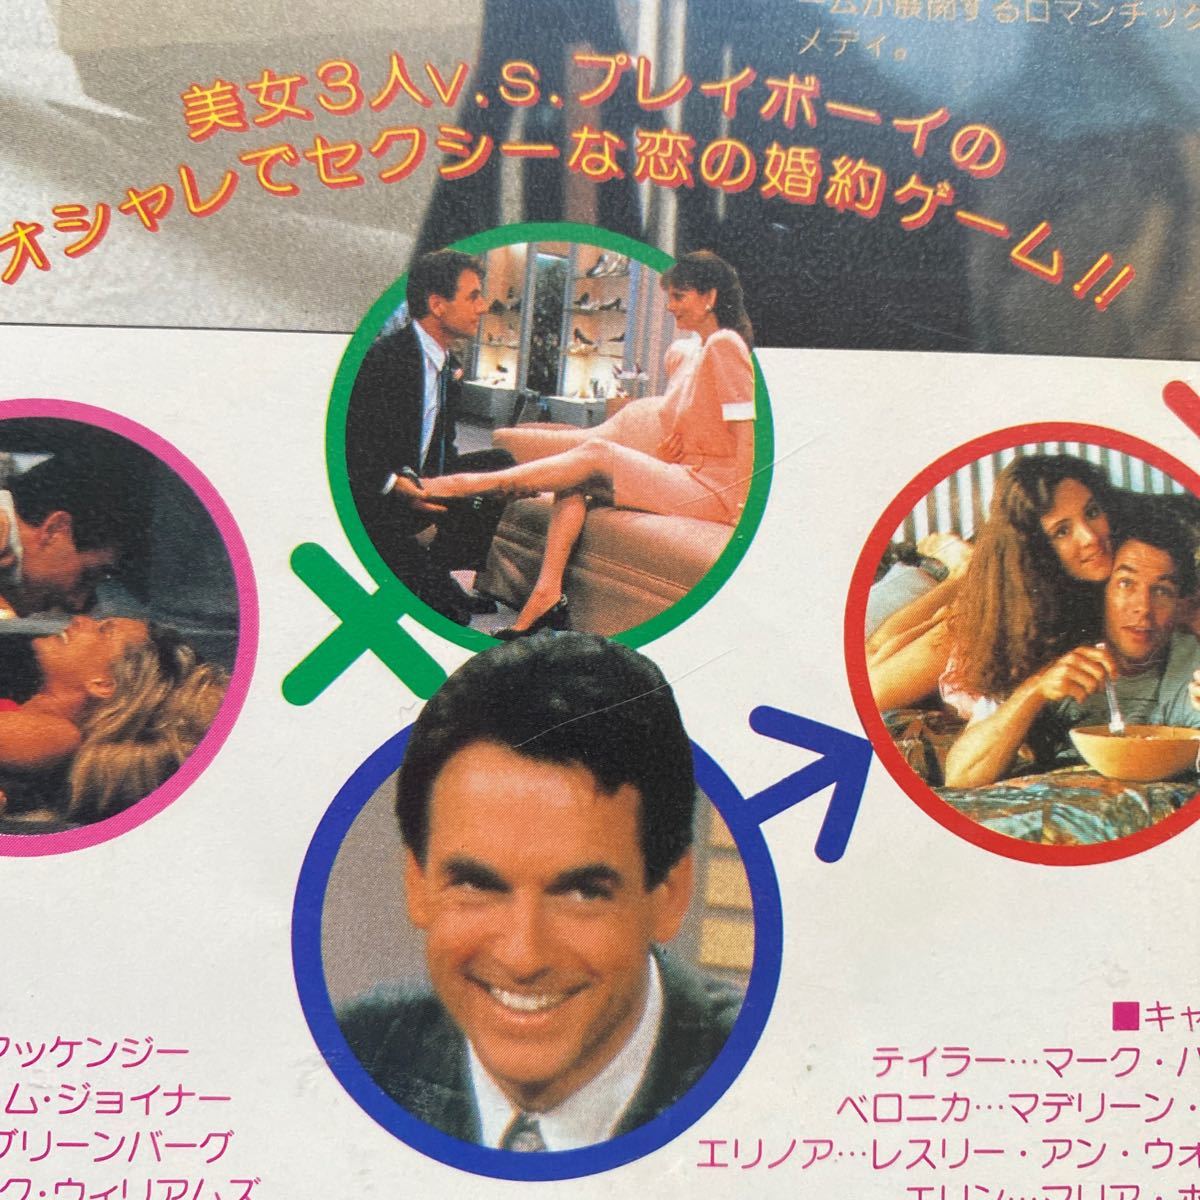 送料無料 中古VHSビデオテープ DVD未発売 3人の婚約者 カラー103分 字幕スーパー 1989年作品 レンタル落ちです 普通に観れます。の画像6